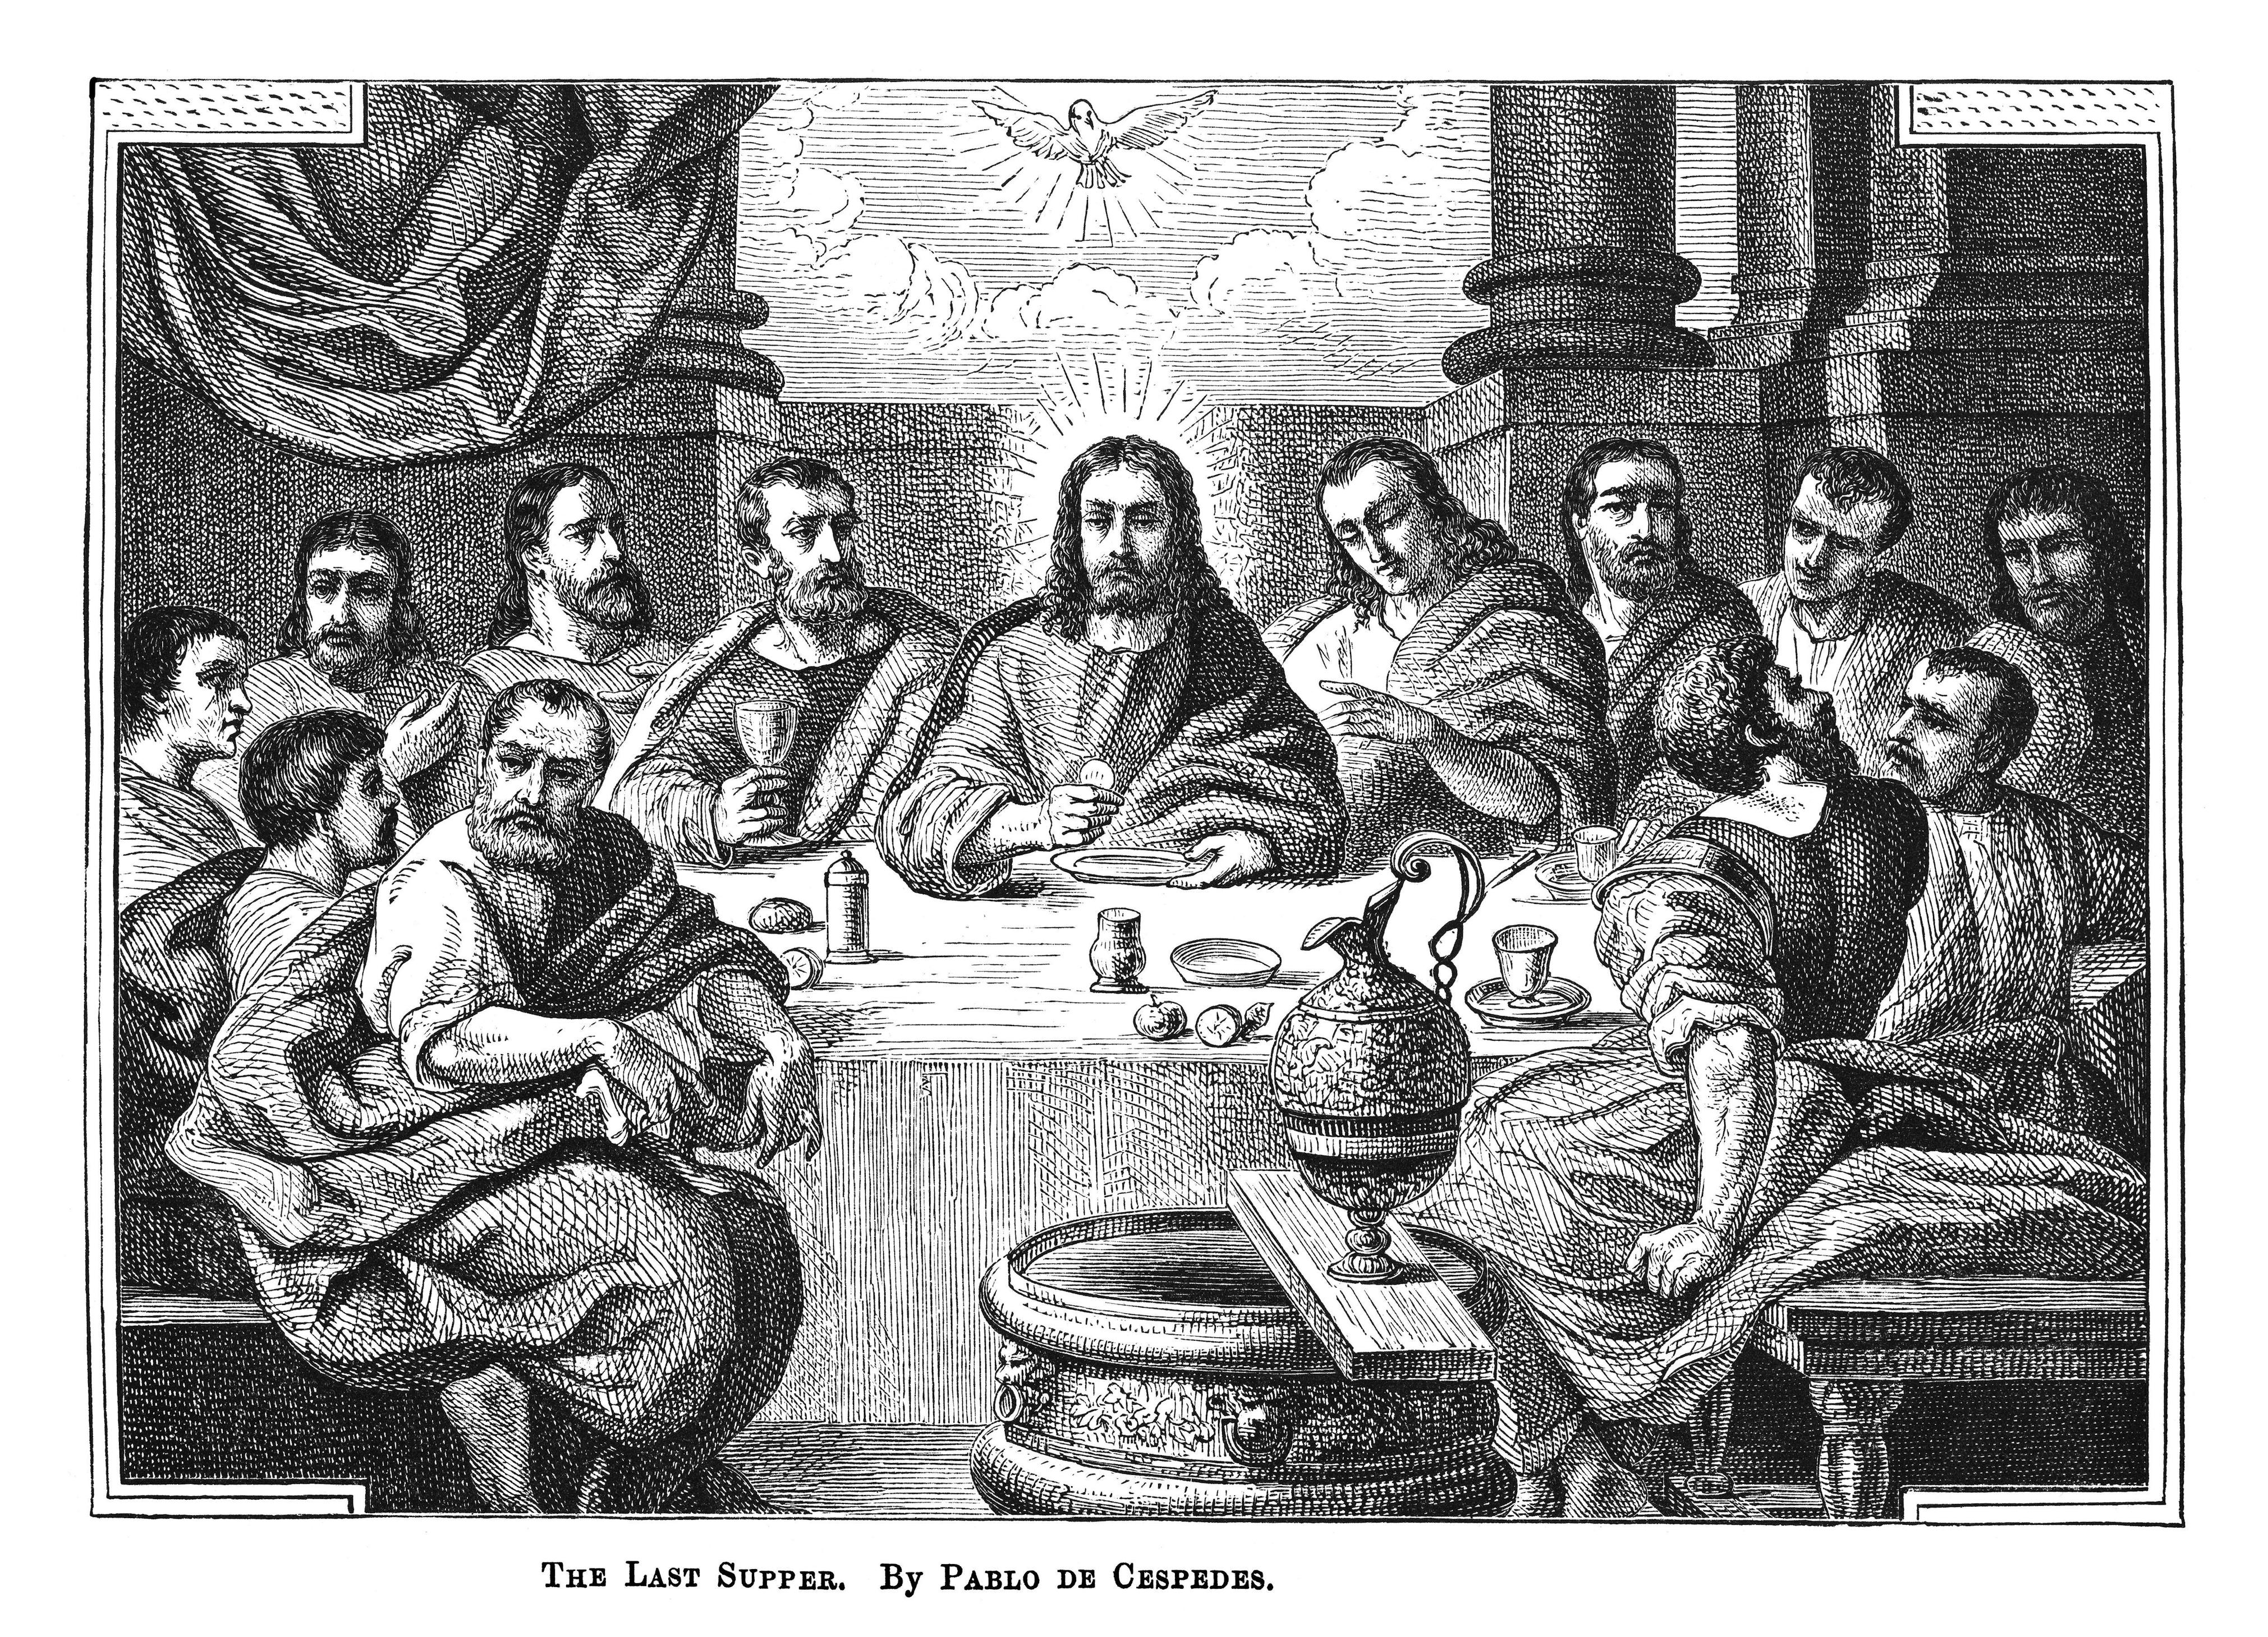 ¿jesús y los 12 apóstoles existieron en realidad? la ia responde